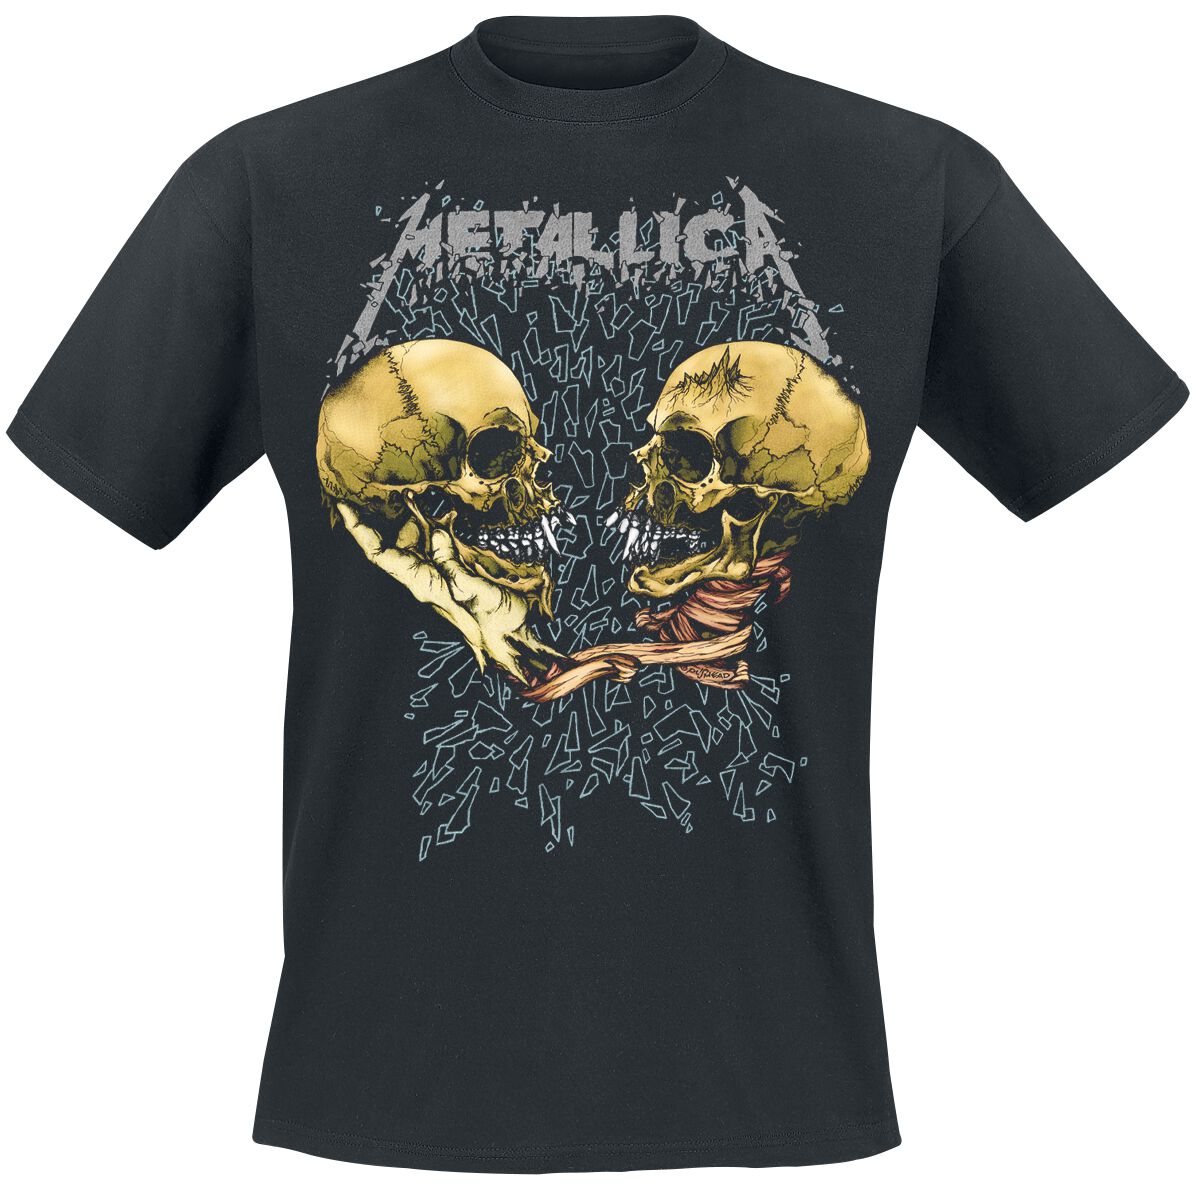 Metallica T-Shirt - Sad But True - S bis XXL - für Männer - Größe M - schwarz  - Lizenziertes Merchandise!